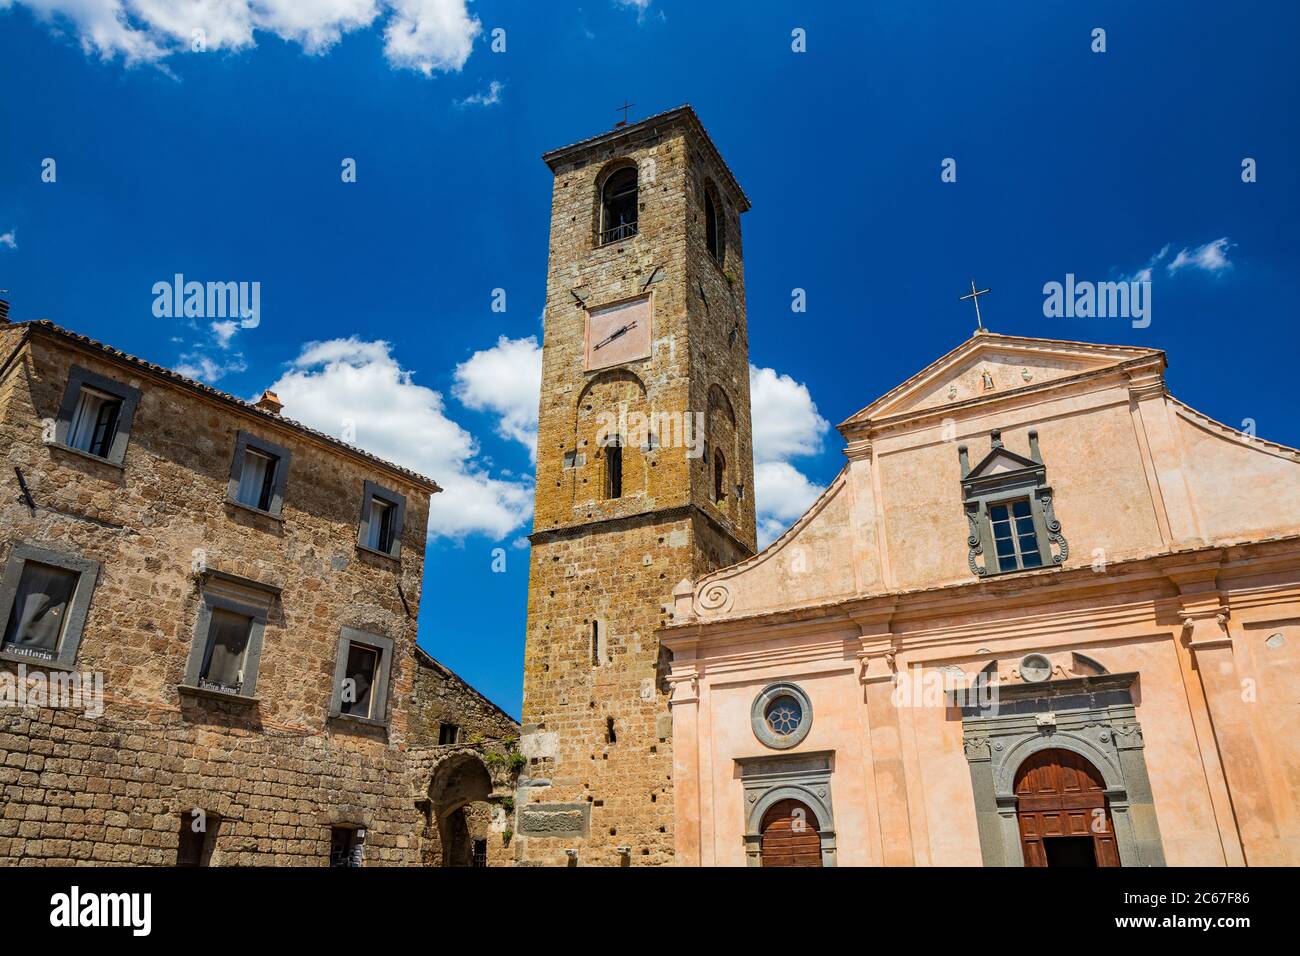 Civita di Bagnoregio, Viterbo, Tuscia, Lazio, Italy. The Church of San Donato with the bell tower and the clock. Three wooden doors. Stock Photo